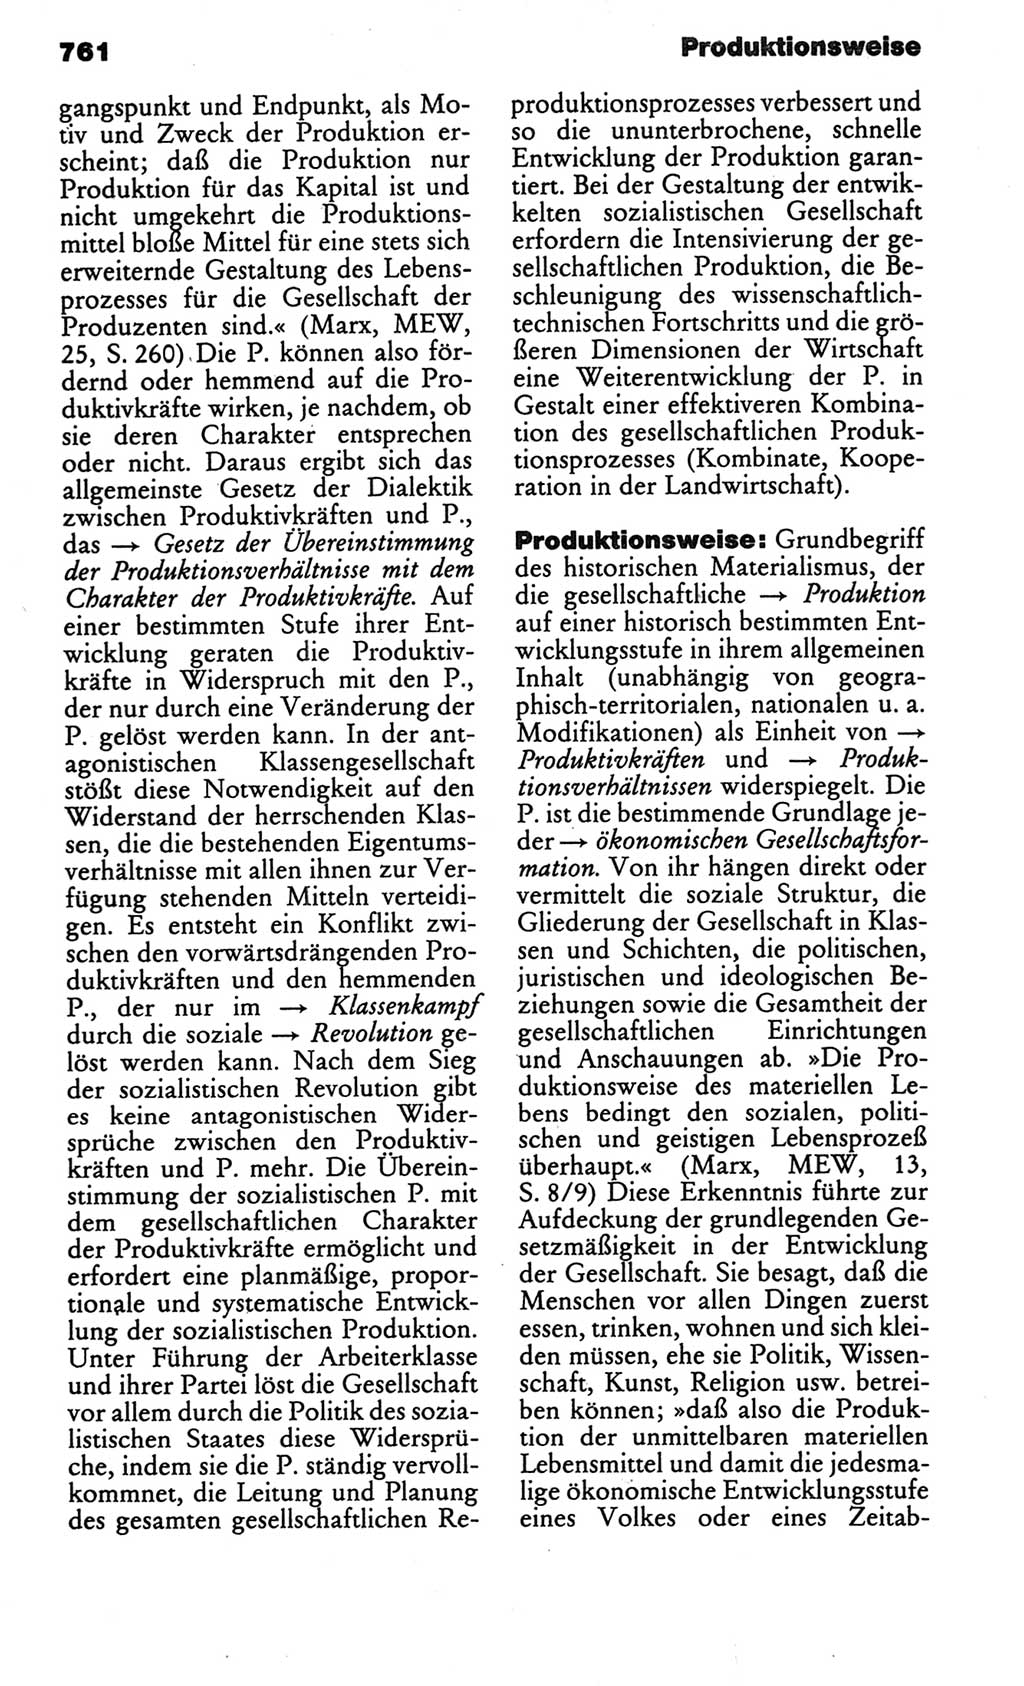 Kleines politisches Wörterbuch [Deutsche Demokratische Republik (DDR)] 1986, Seite 761 (Kl. pol. Wb. DDR 1986, S. 761)